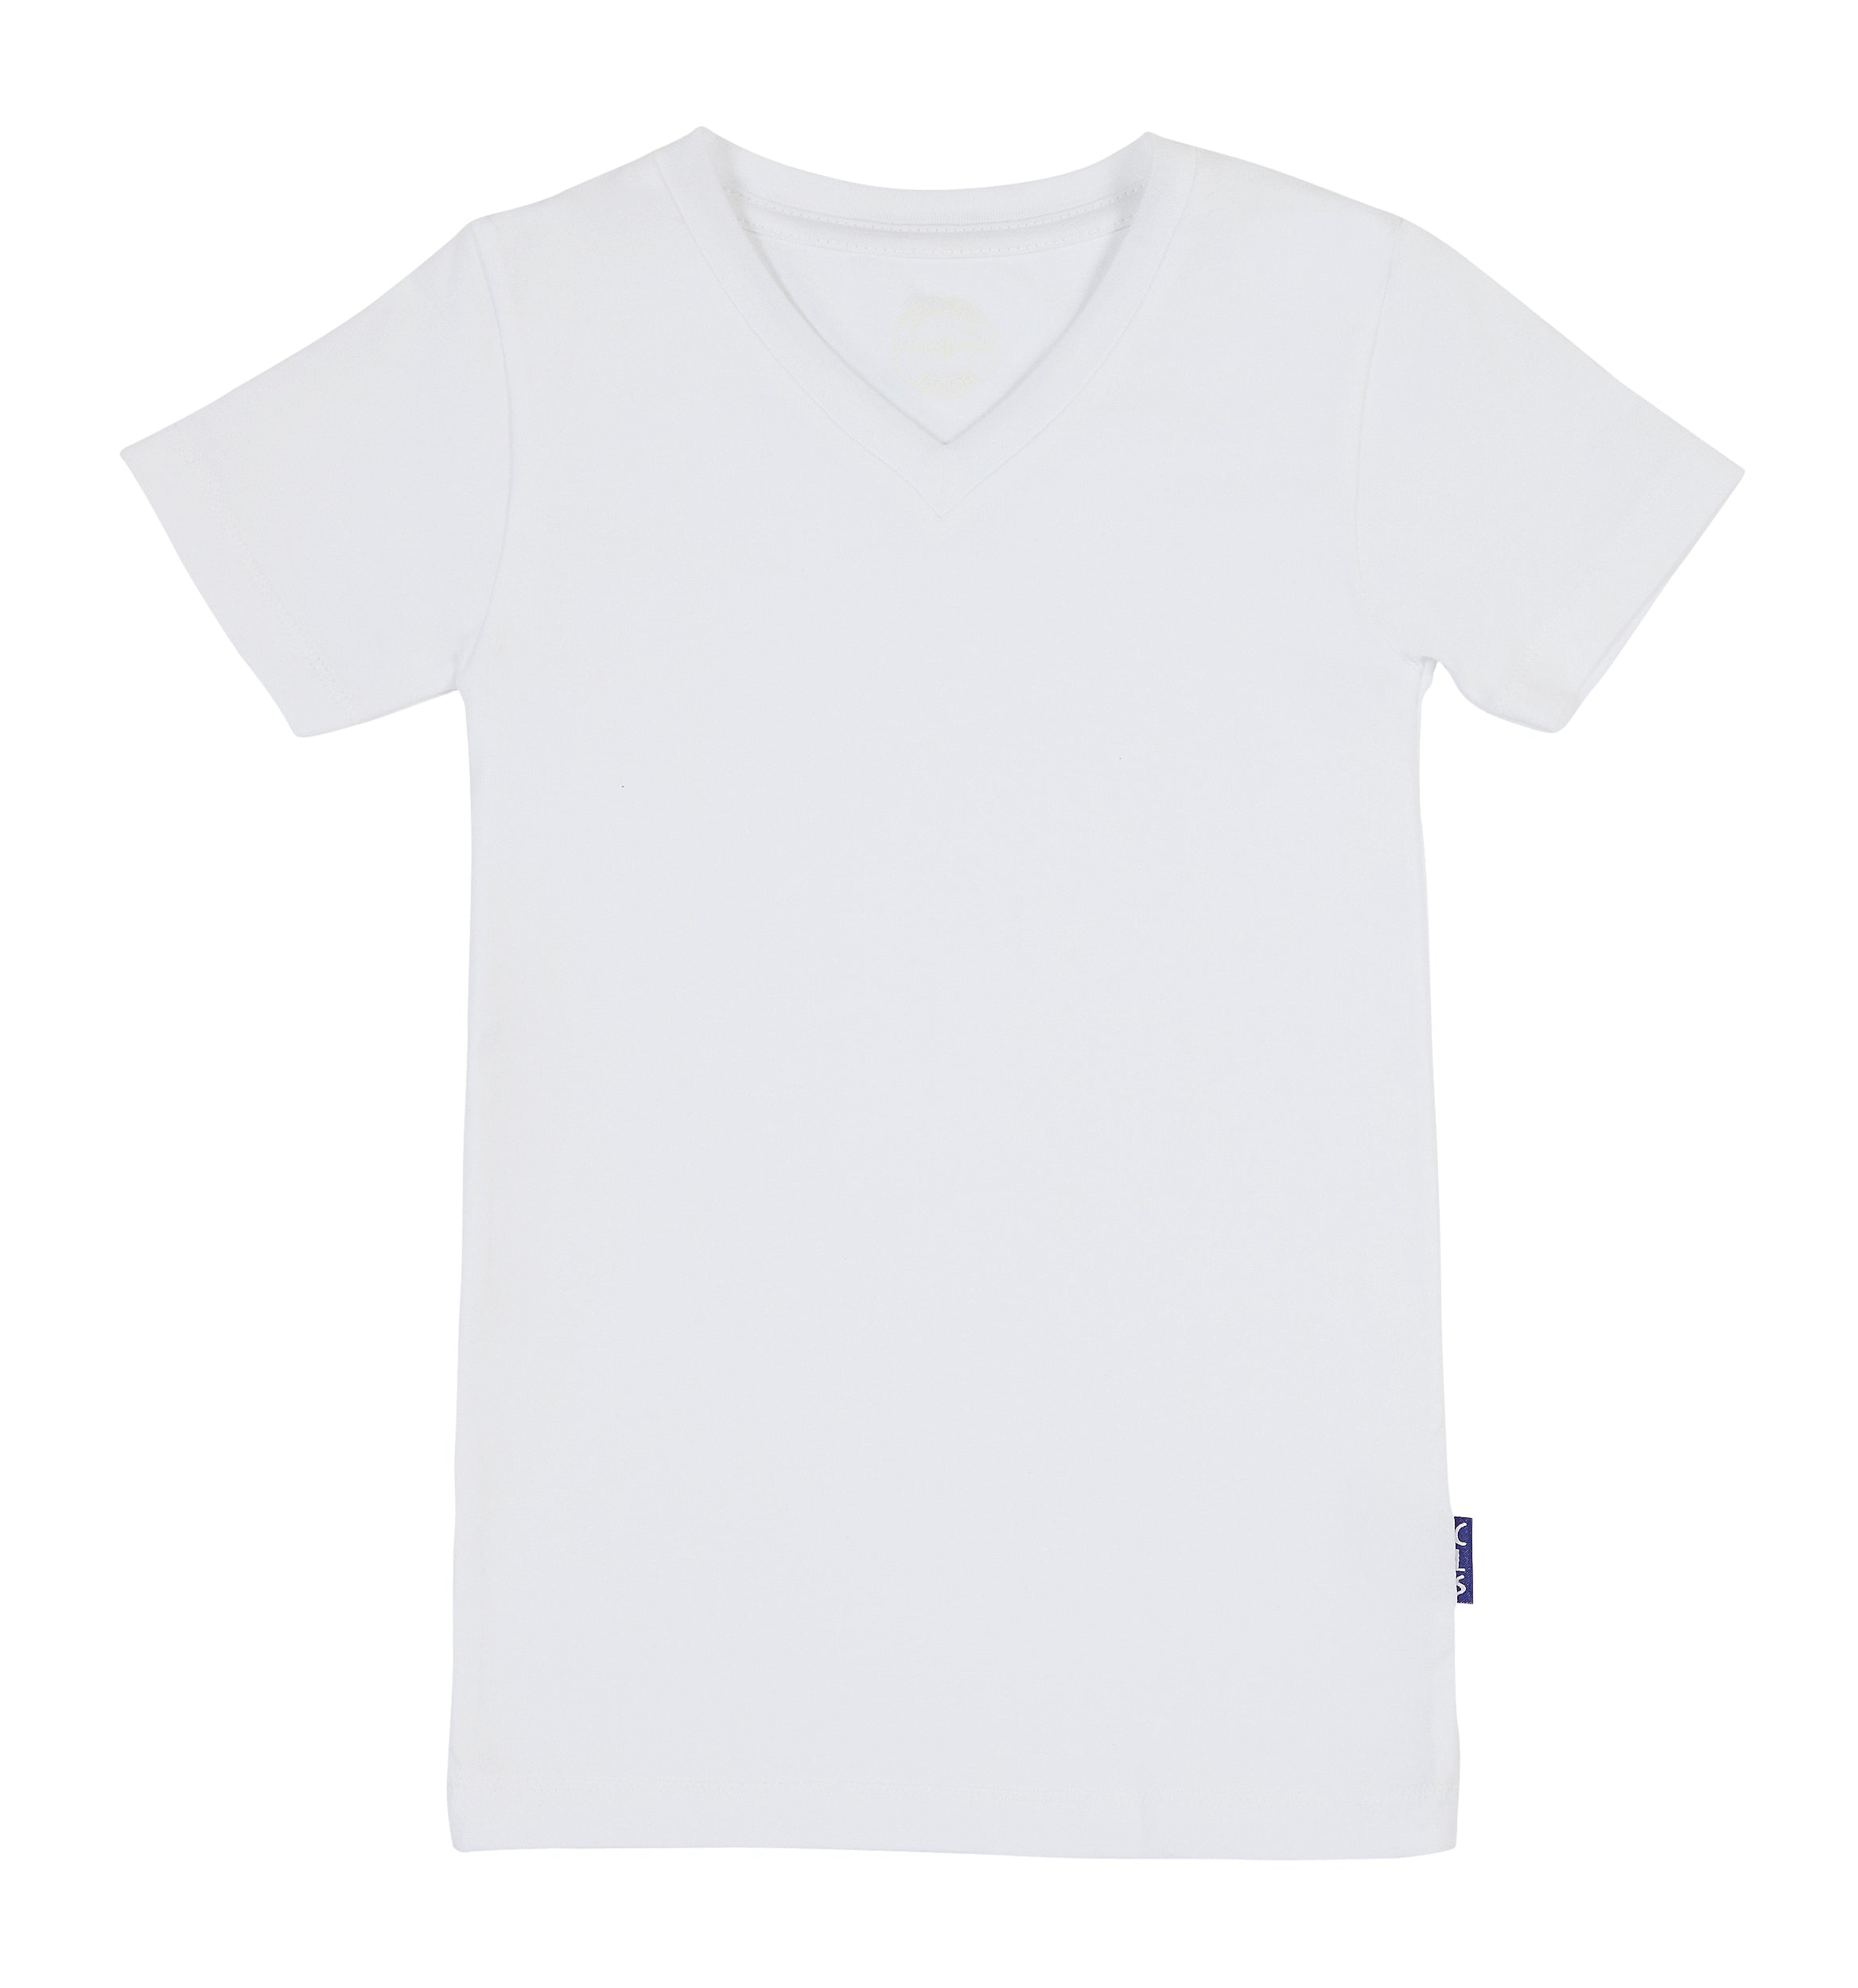 Jongens Boys V-neck T-shirt SS van Claesen's in de kleur White in maat 152.